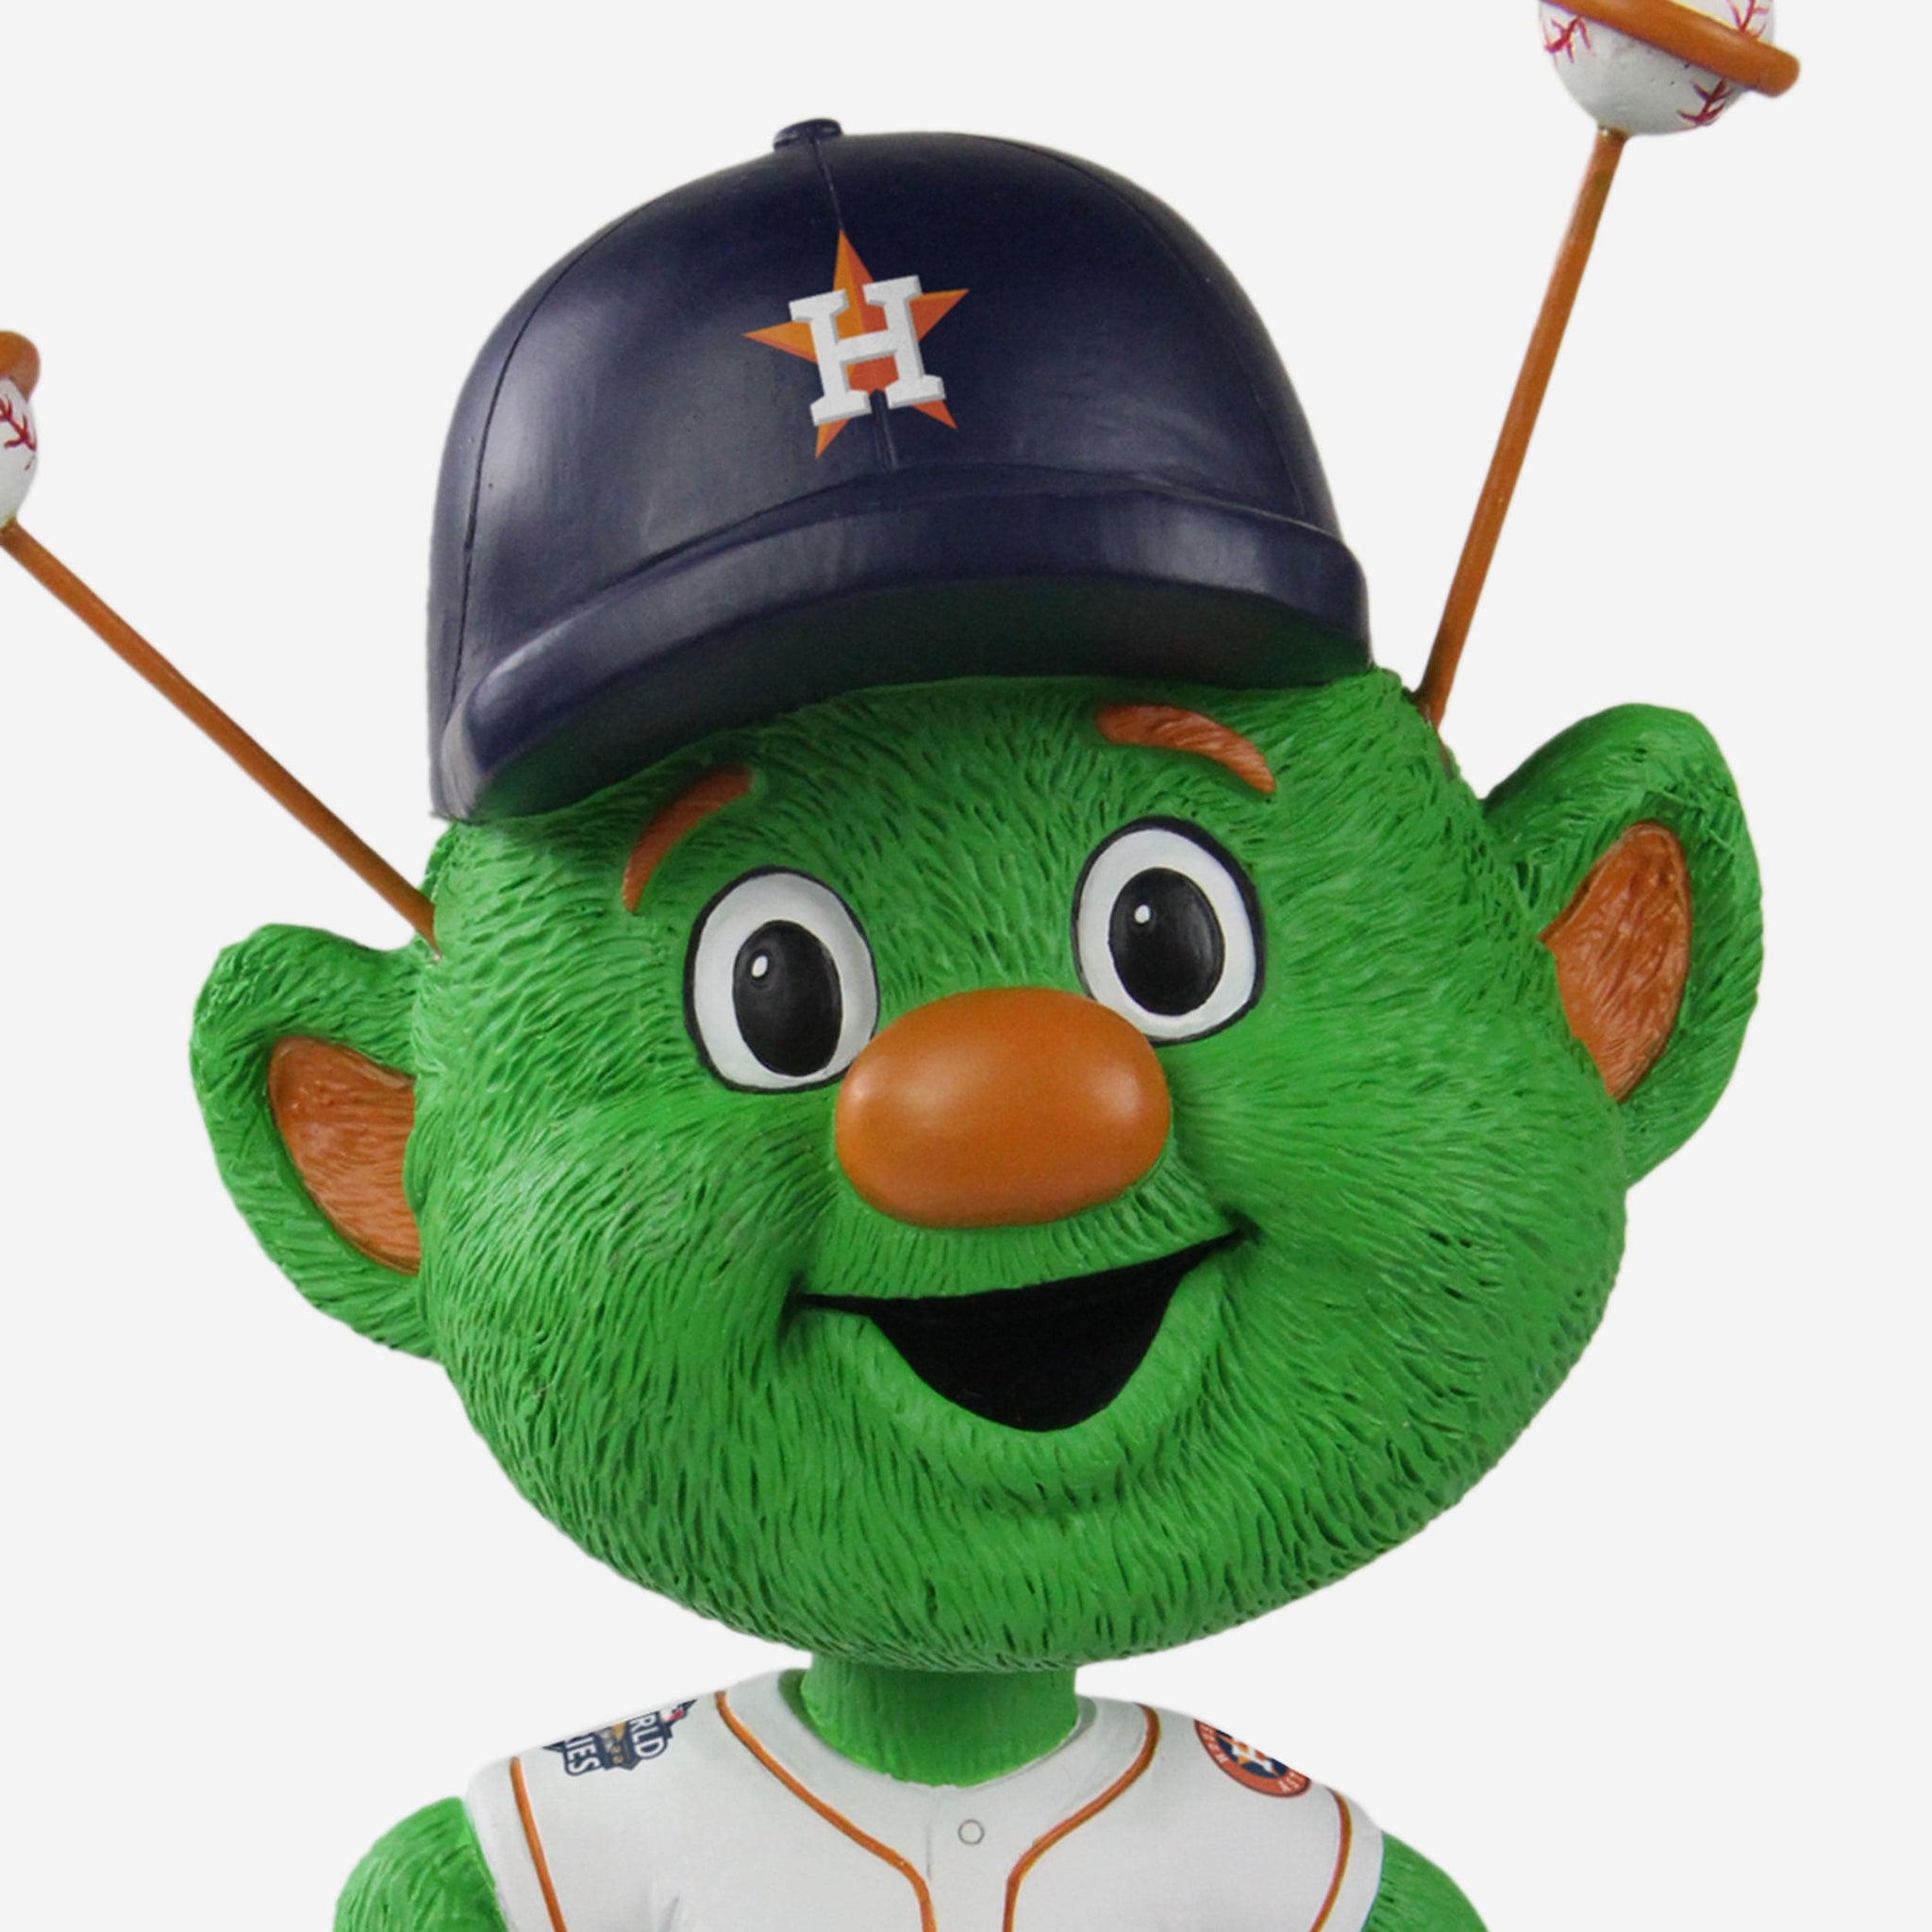 Houston Astros Mascot Orbit  Astros, Houston astros, Astros baseball